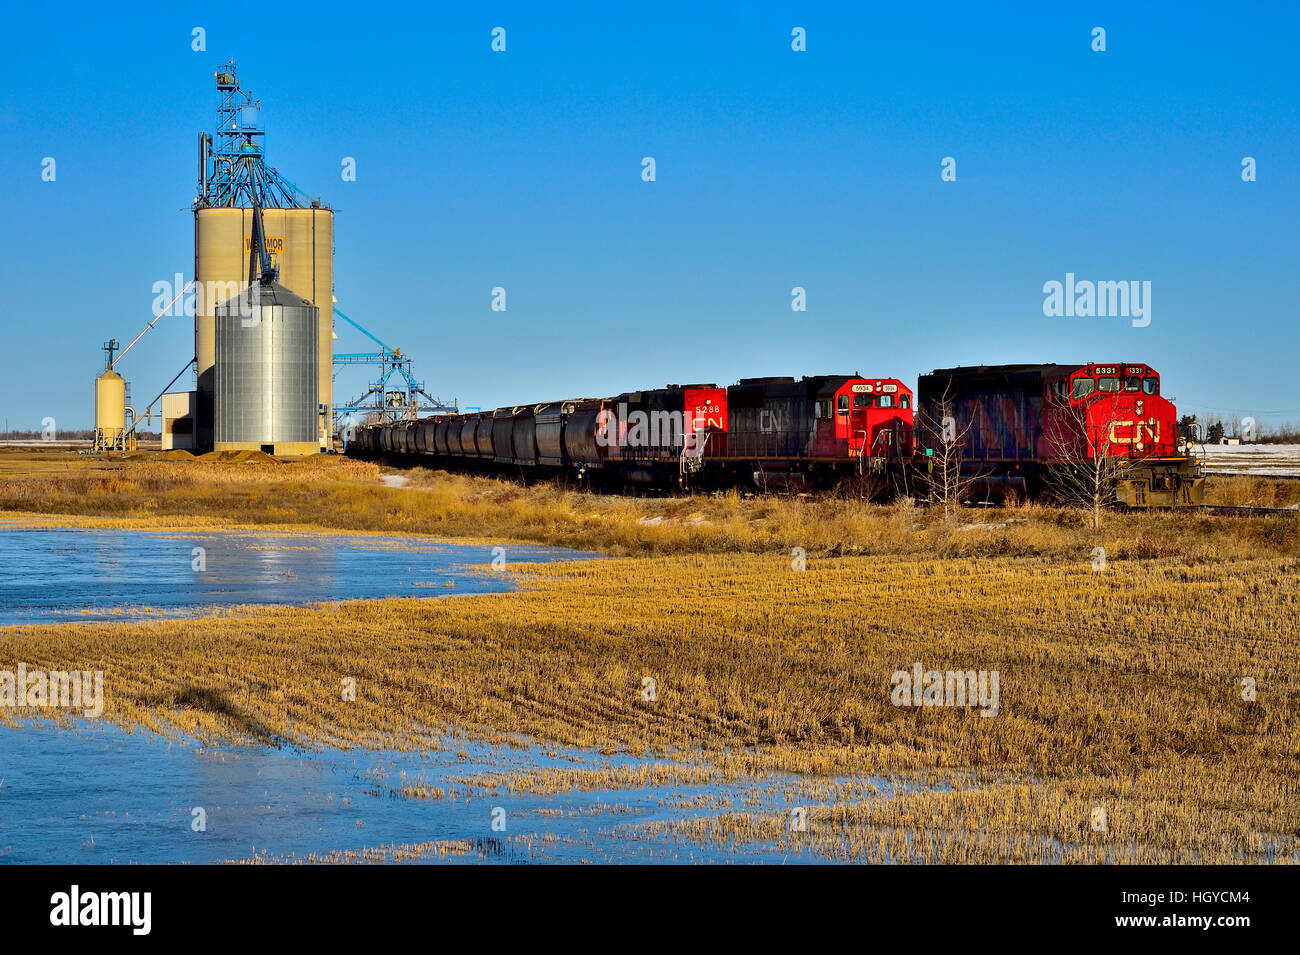 Eine kanadische National Freight Train laden Getreide aus der Lagerung von Getreide Terminal in Morinville Alberta, Kanada. Stockfoto